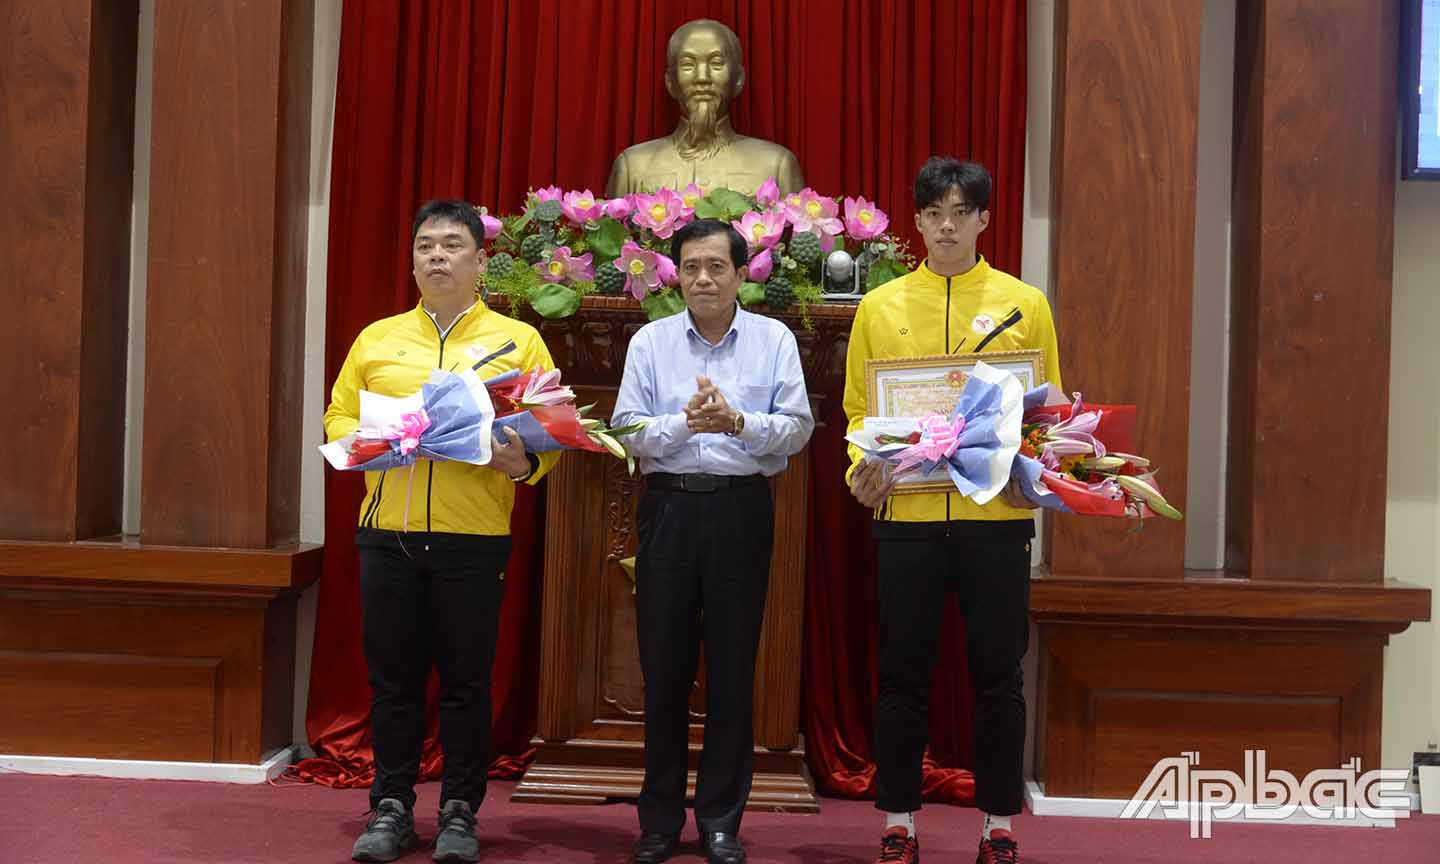 Đồng chí Nguyễn Đức Đảm, Giám đốc Sở Văn hóa - Thể thao và Du lịch trao thưởng cho HLV Lê Huy Hoàng và VDDV Phạm Minh Bảo Kha.